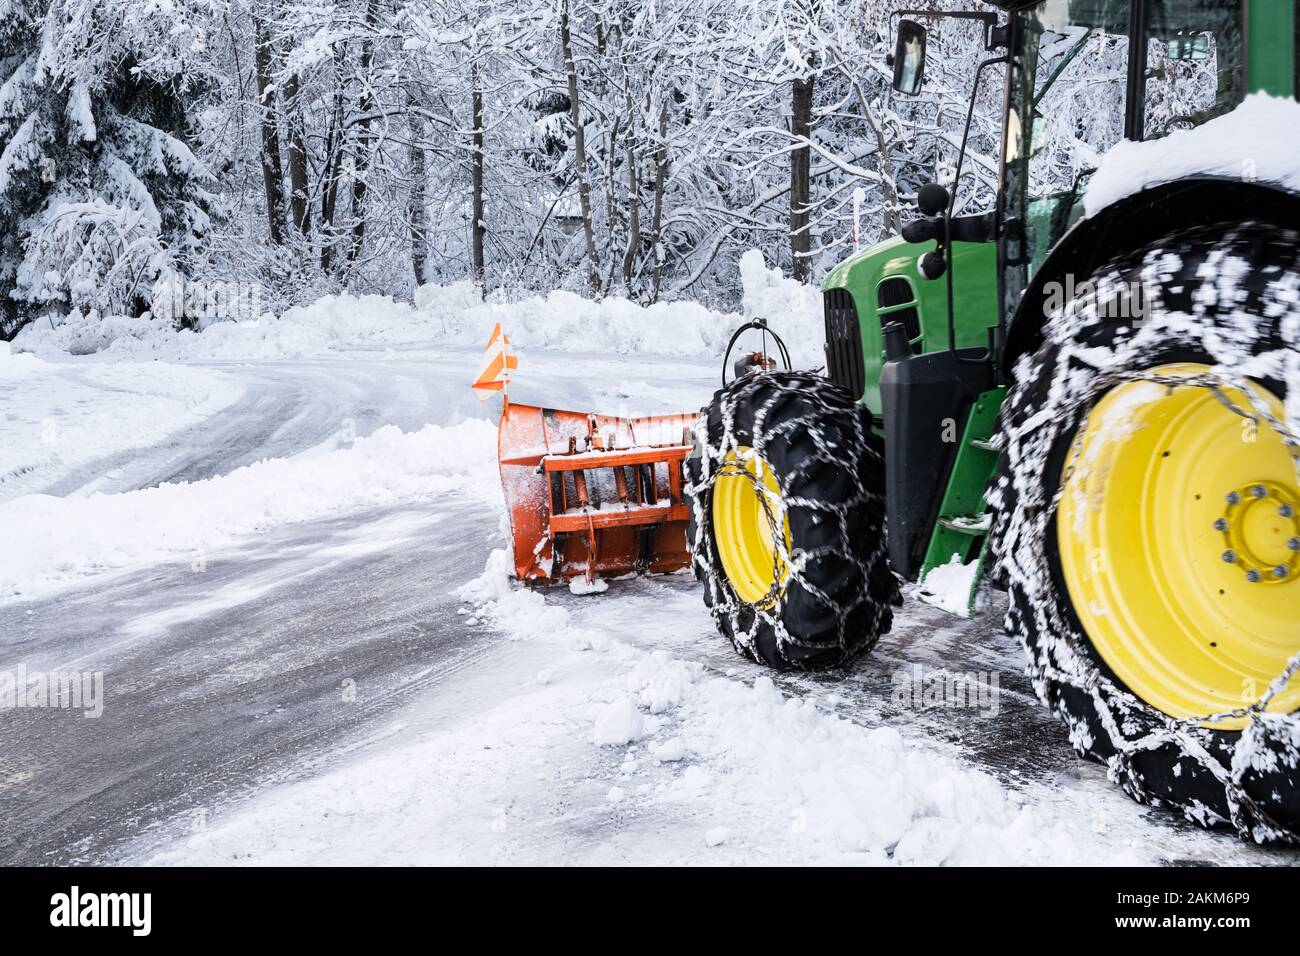 Schneereinigungsmaschine für den Traktor zum Entschneien von Schnee auf  einem Müllwagen. Schneepflug im Freien Reinigung Straße Stadt nach  Schneesturm oder Schneefall Stockfotografie - Alamy